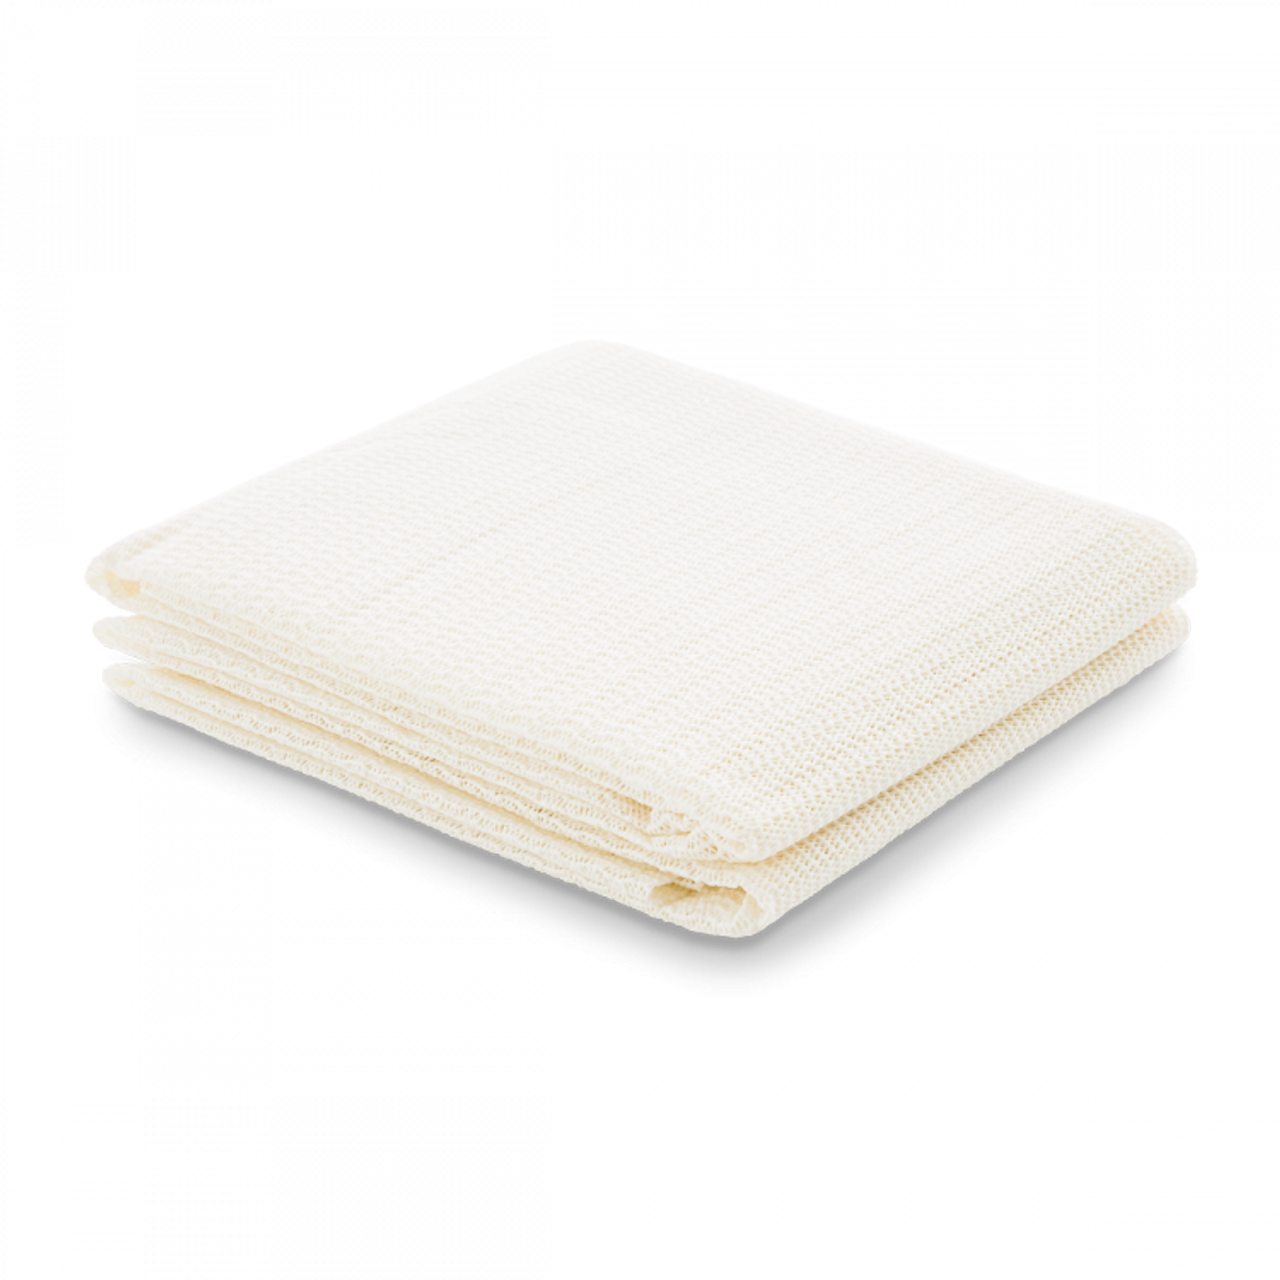 Eco-Friendly Rug Pad 400g/420g/440g White PVC Foam Non-Slip Mat